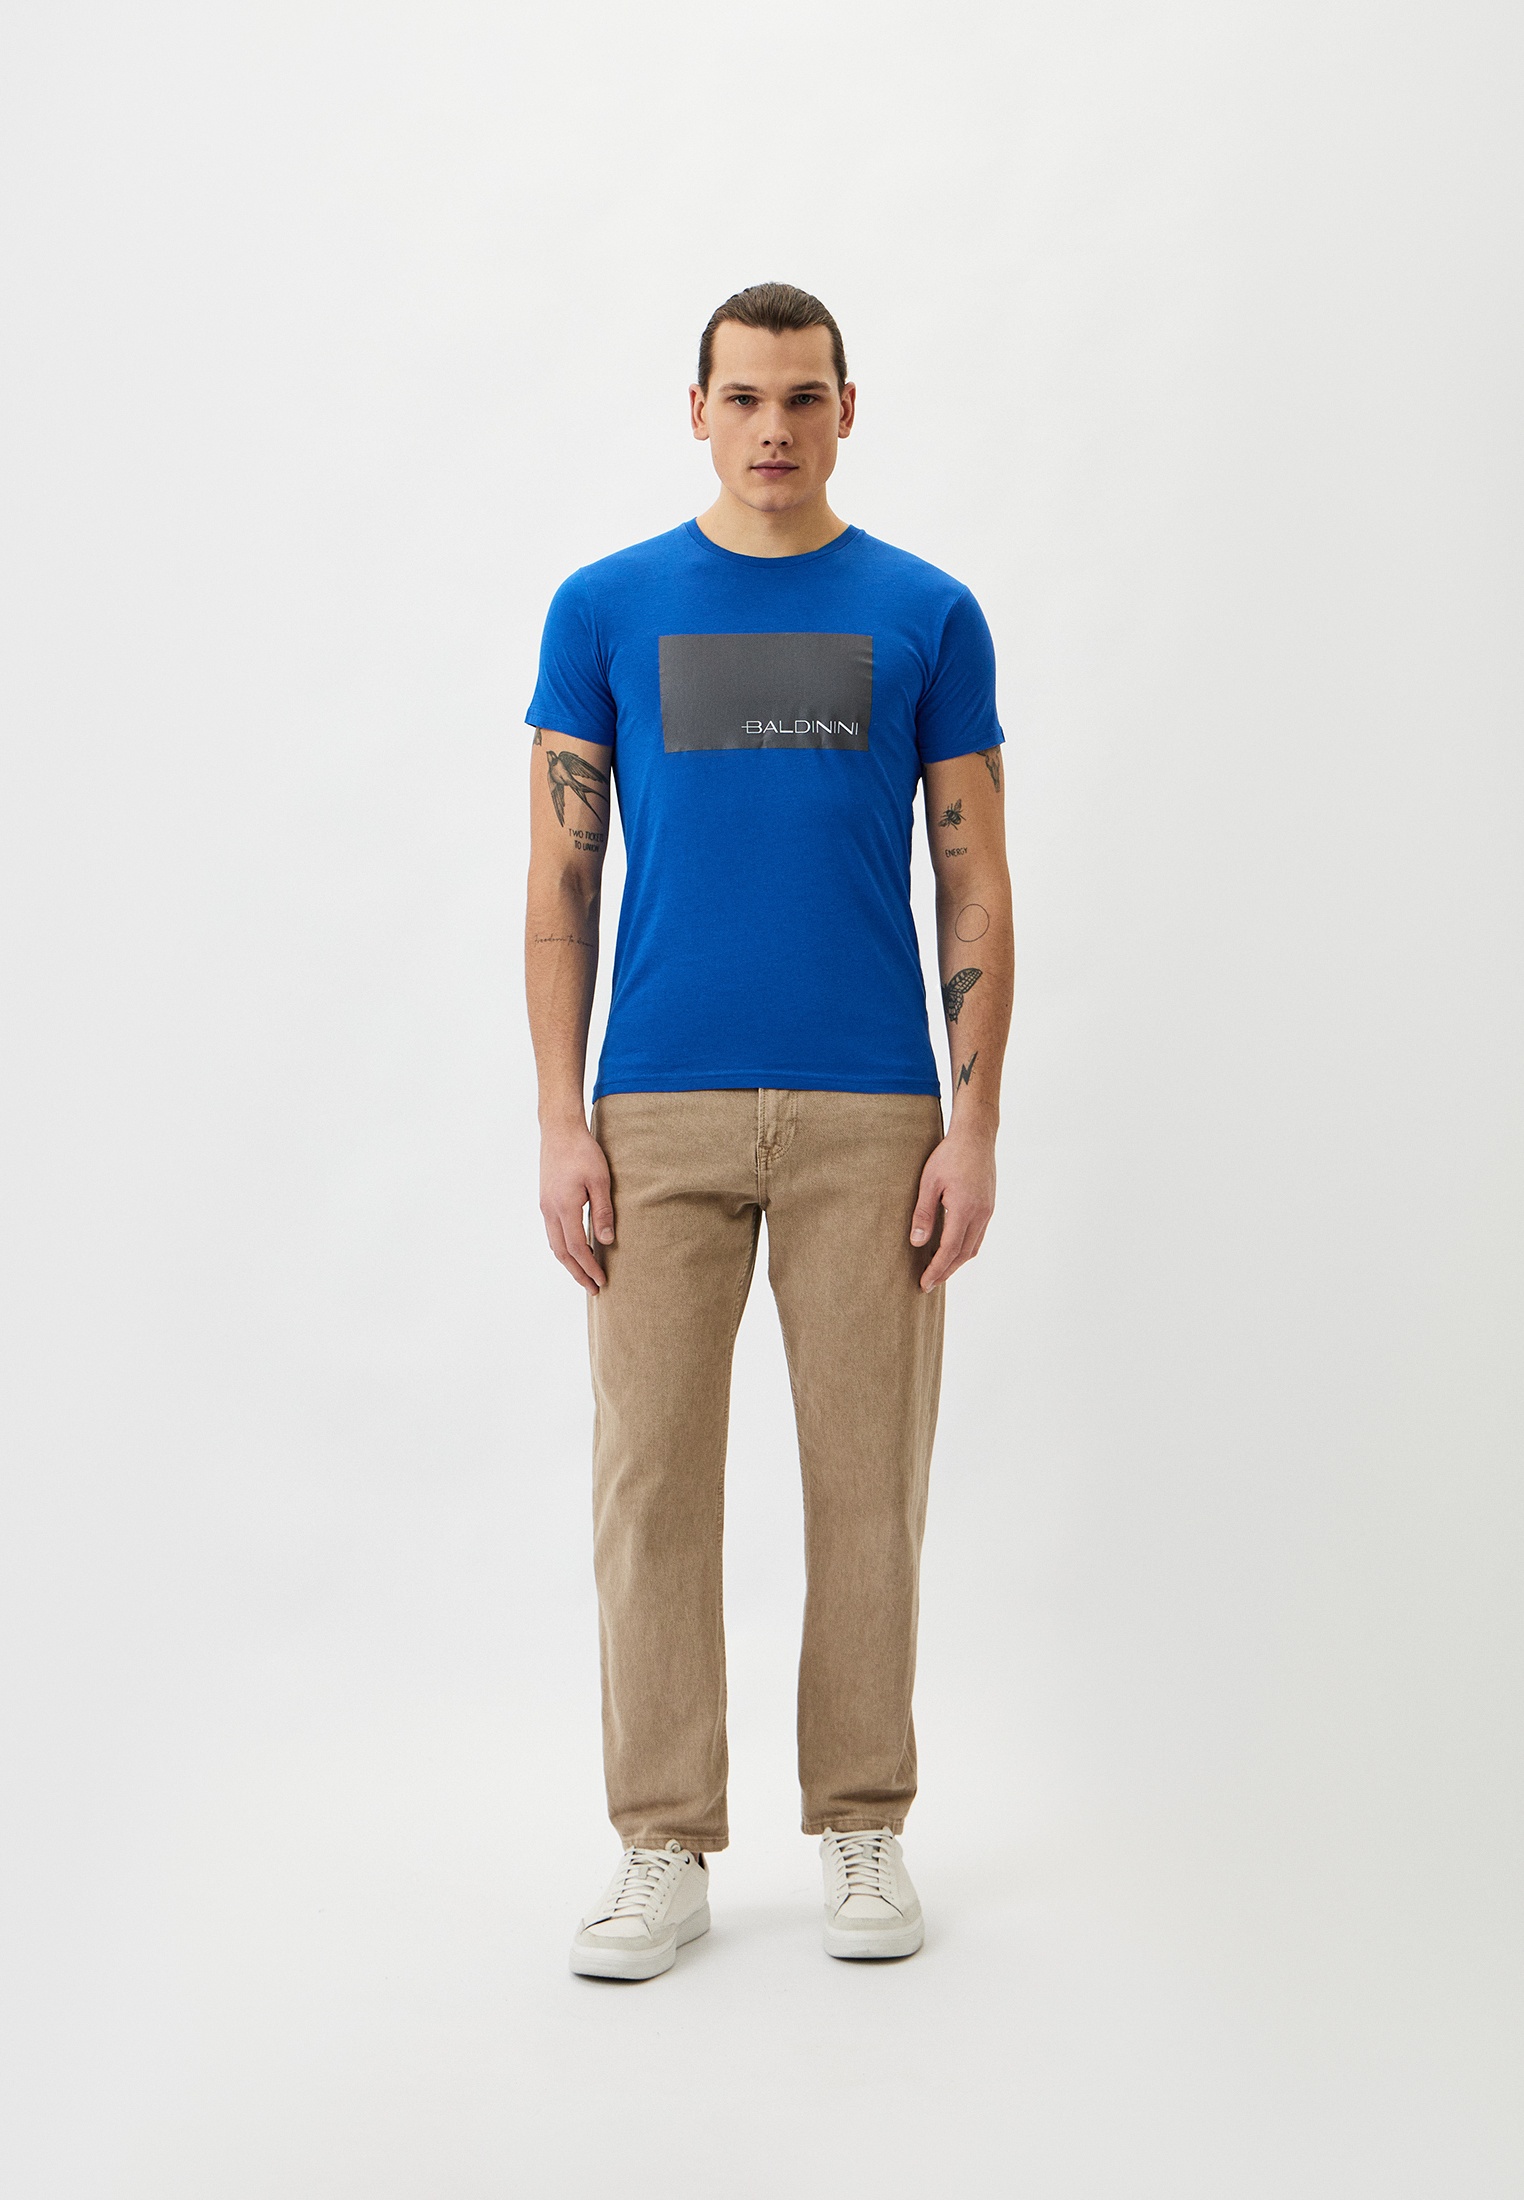 Мужская футболка Baldinini (Балдинини) B-OLM-M014: изображение 6